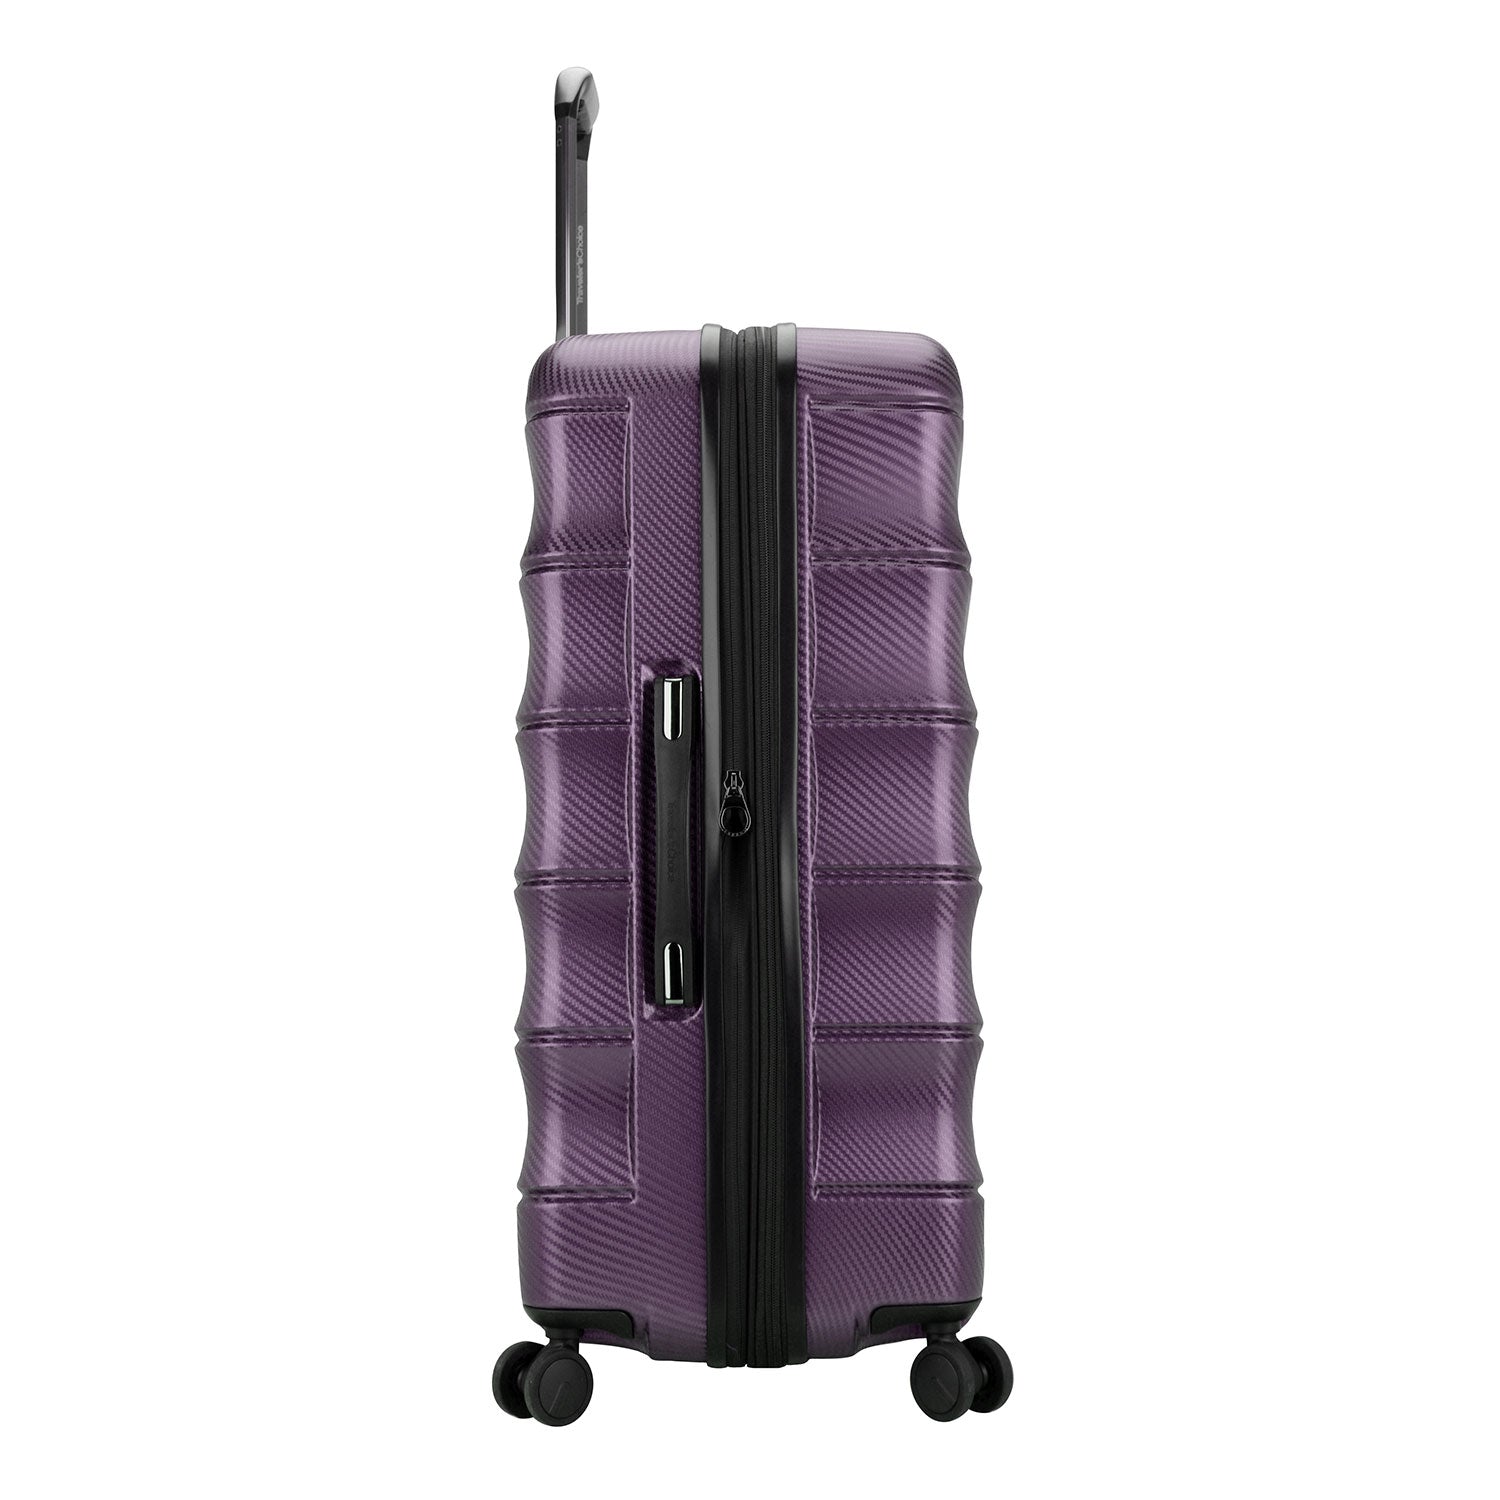 Side profile of large luggage